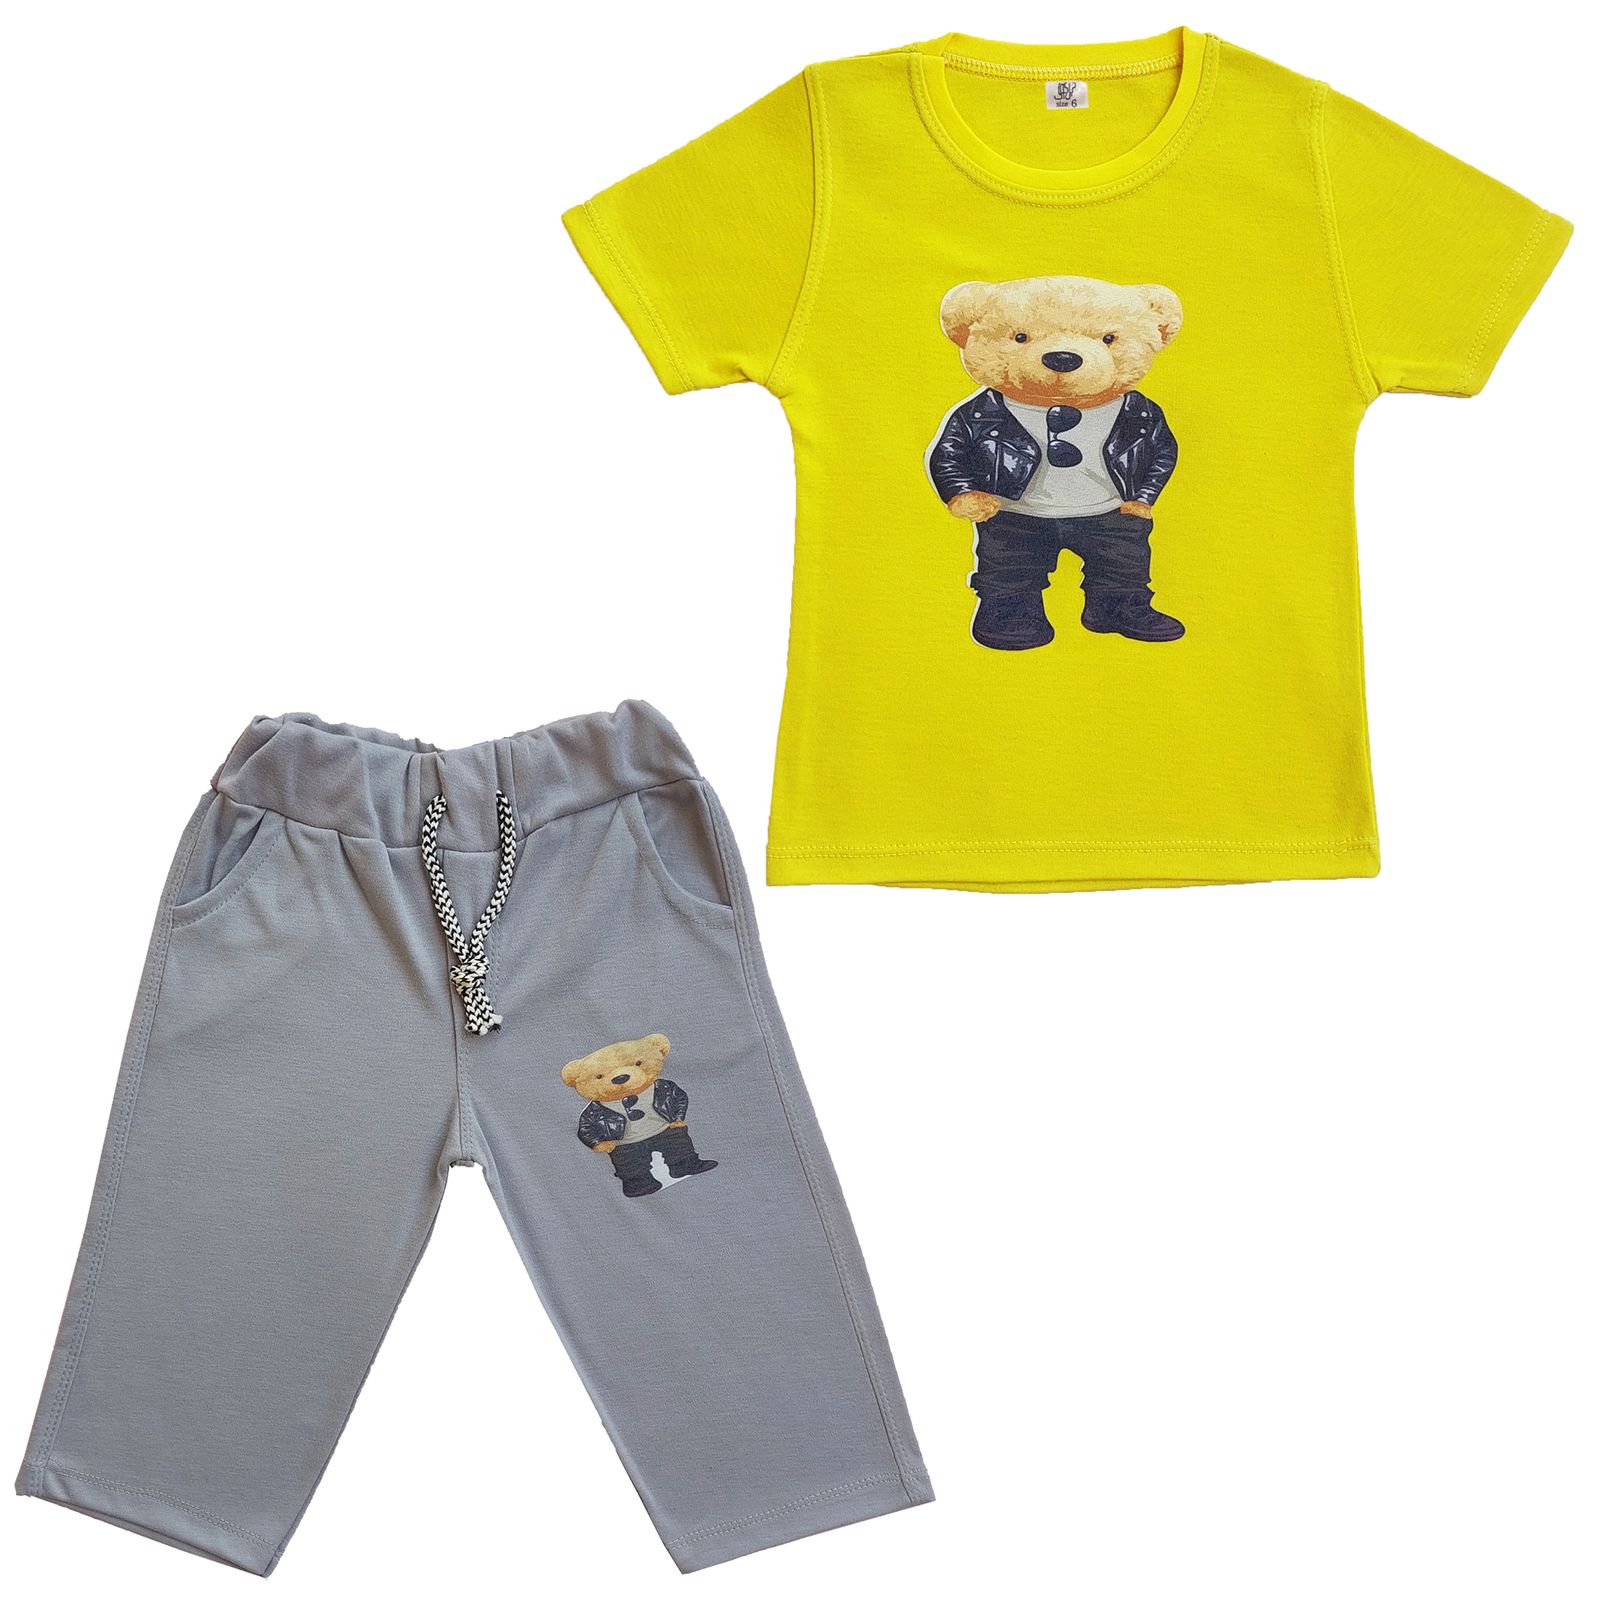 ست تی شرت و شلوارک بچگانه نیل کوک مدل Ted -  - 1